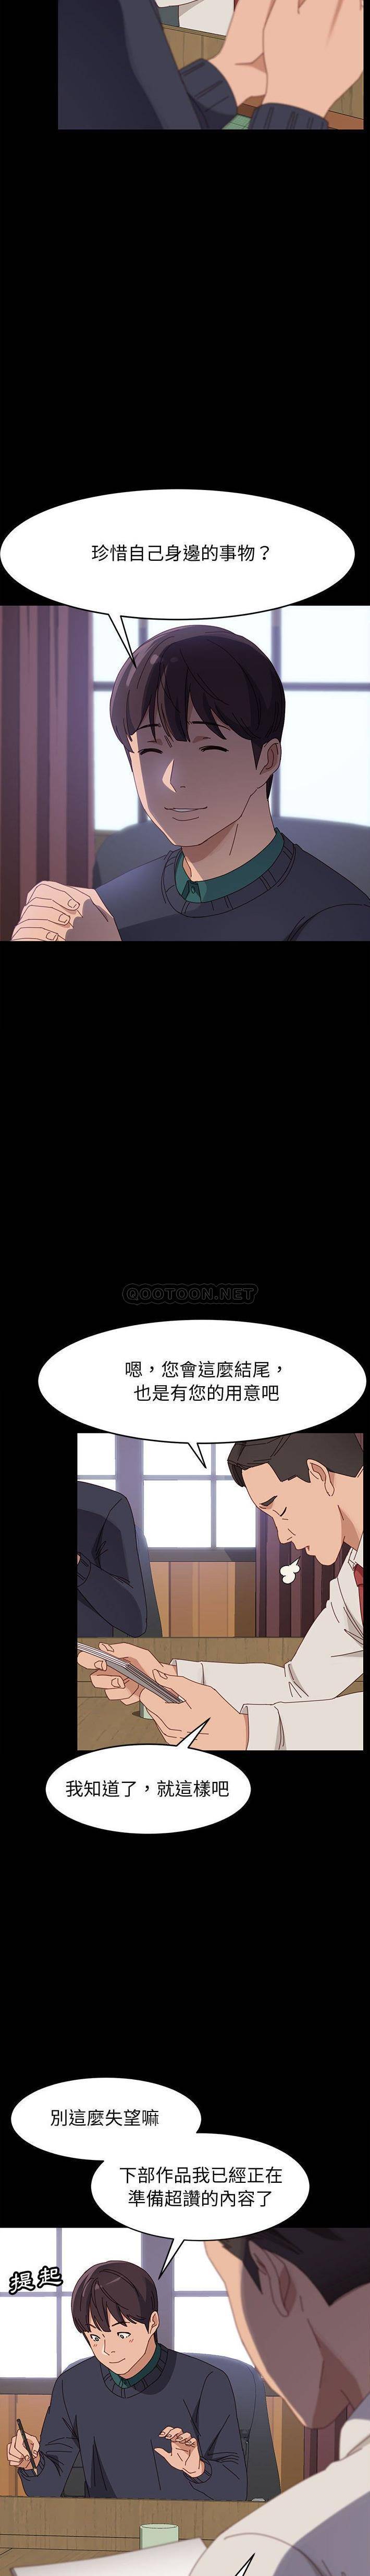 韩国污漫画 美好的寄宿生活 最终话 17